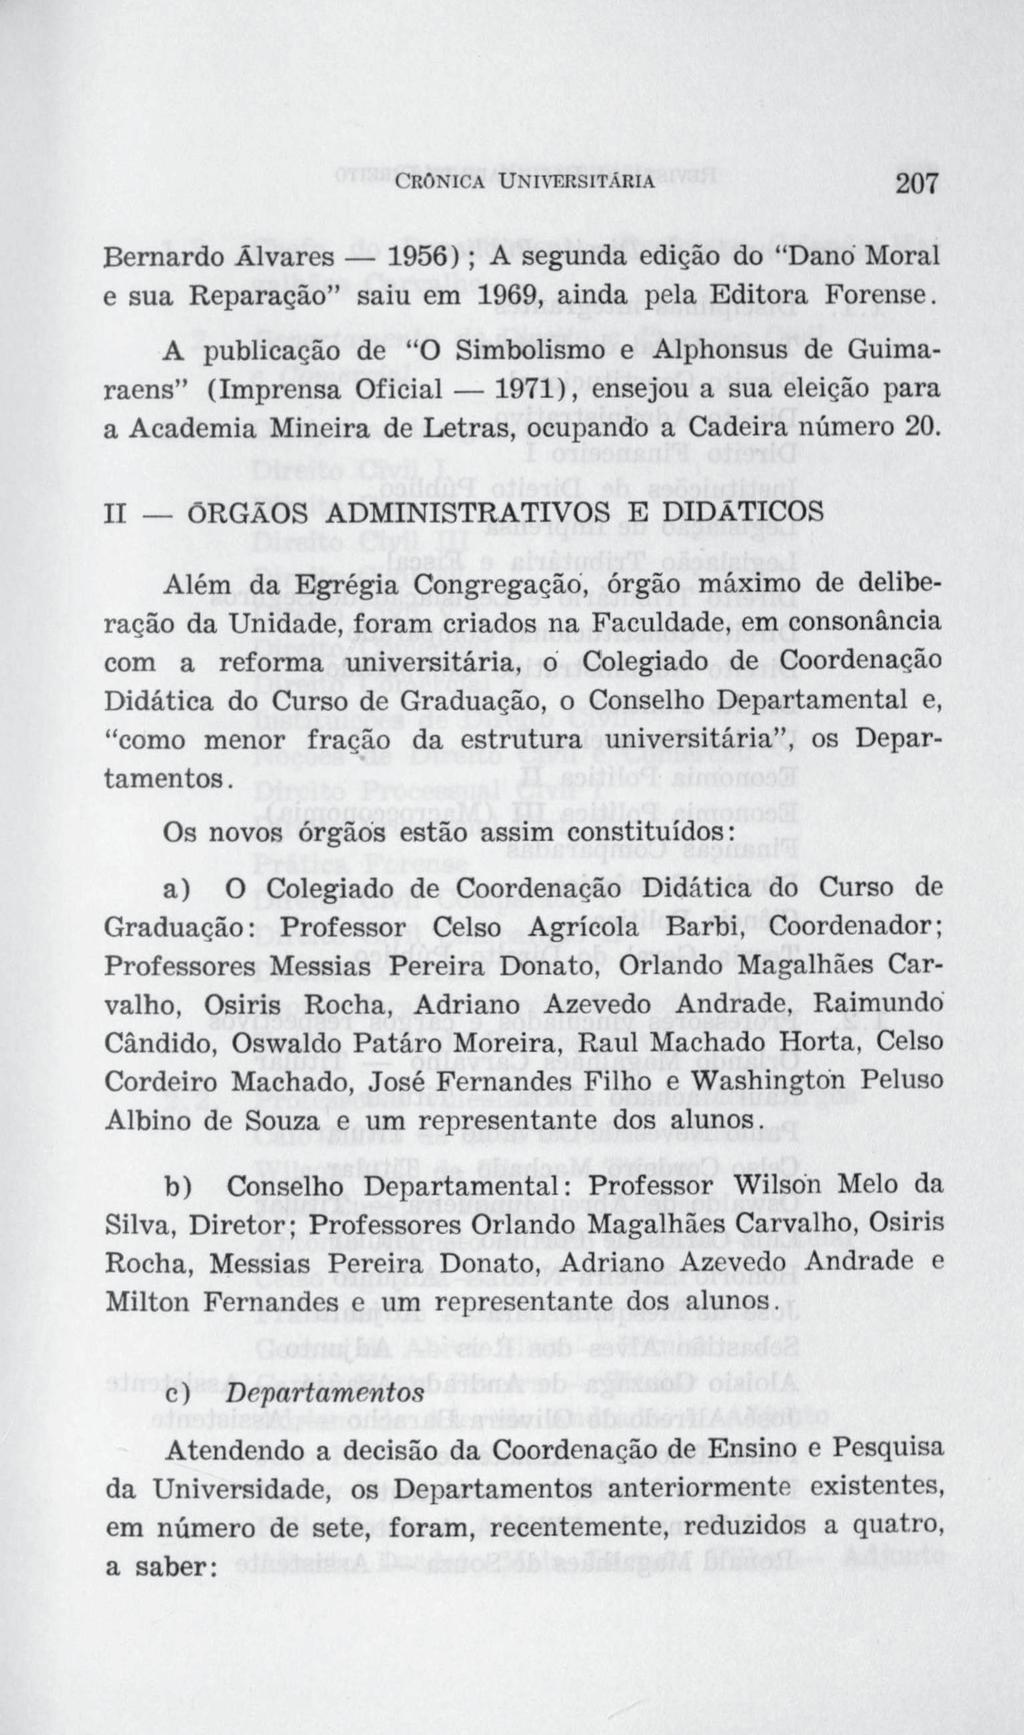 Bernardo Álvares 1956) ; A segunda edição do Dano Moral e sua Reparação saiu em 1969, ainda pela Editora Forense.